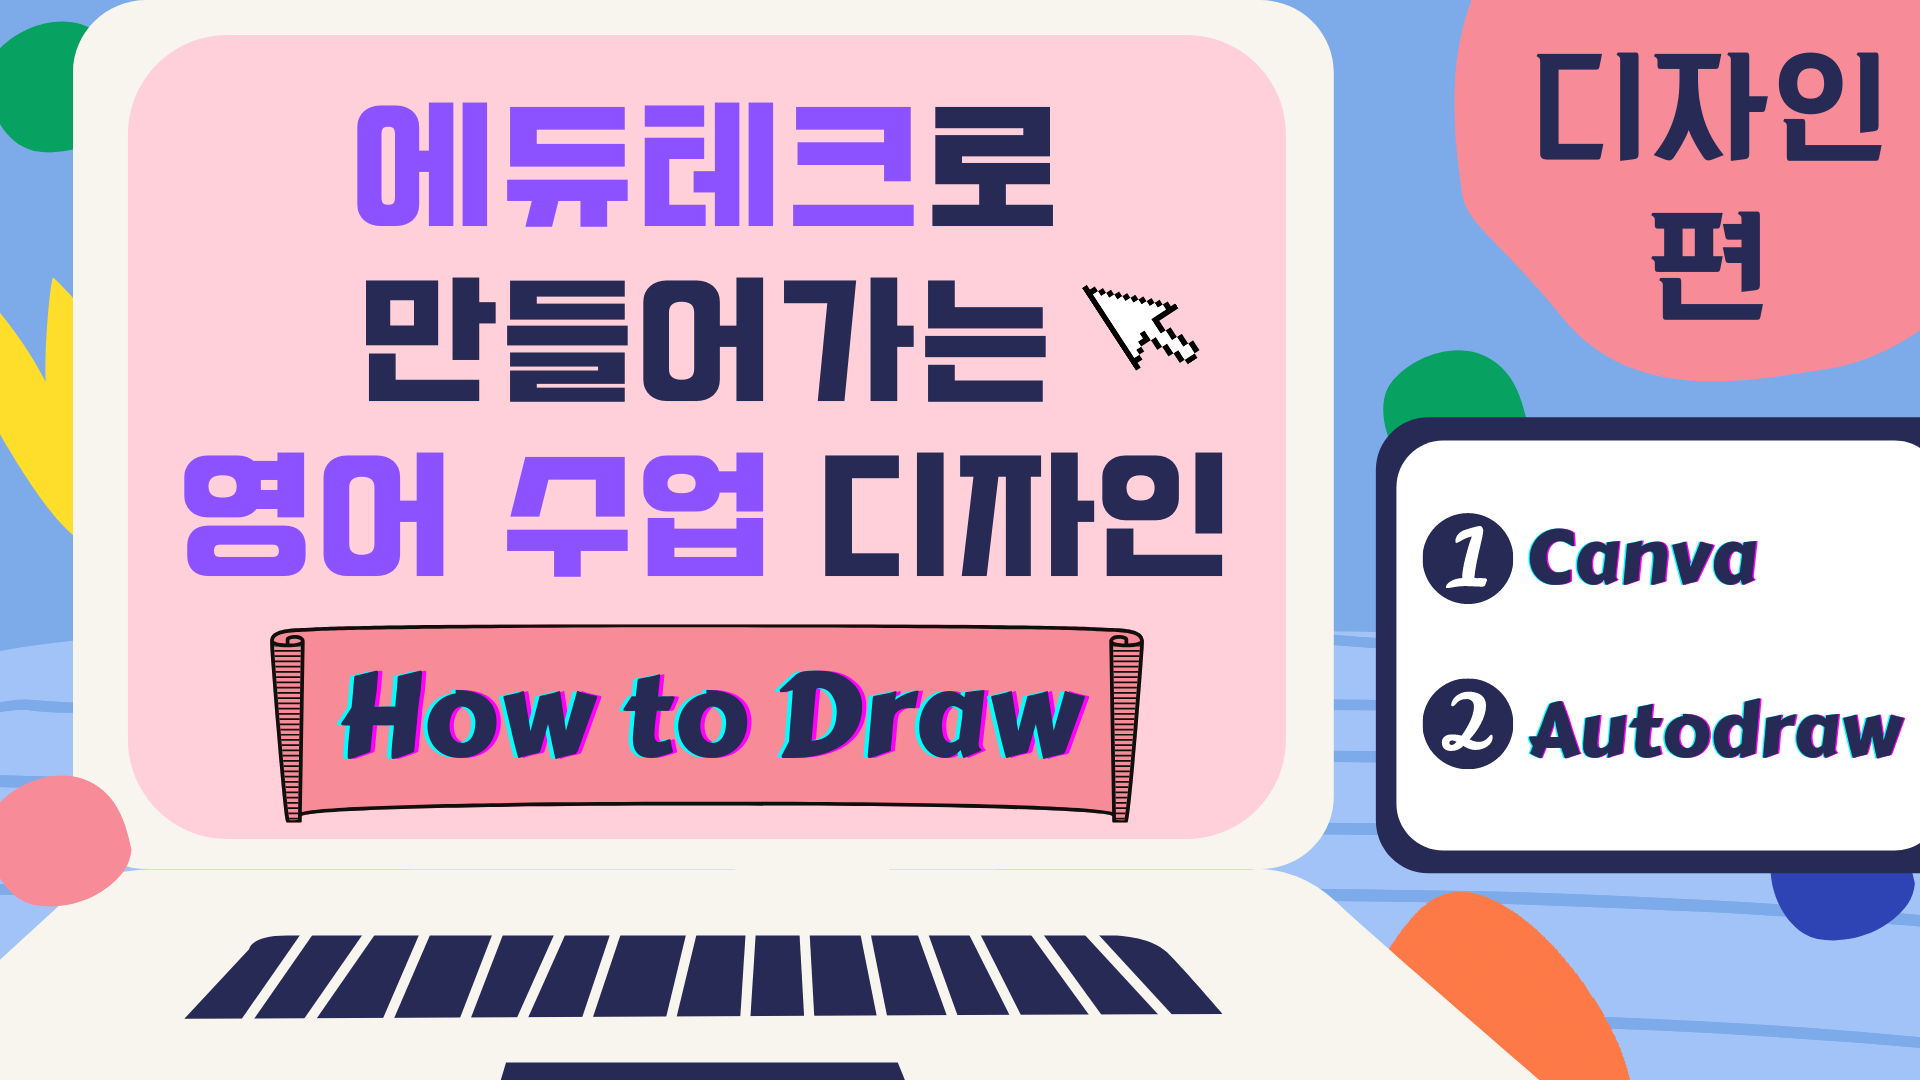 에듀테크로 만들어가는 영어 수업 디자인 (How to Draw)